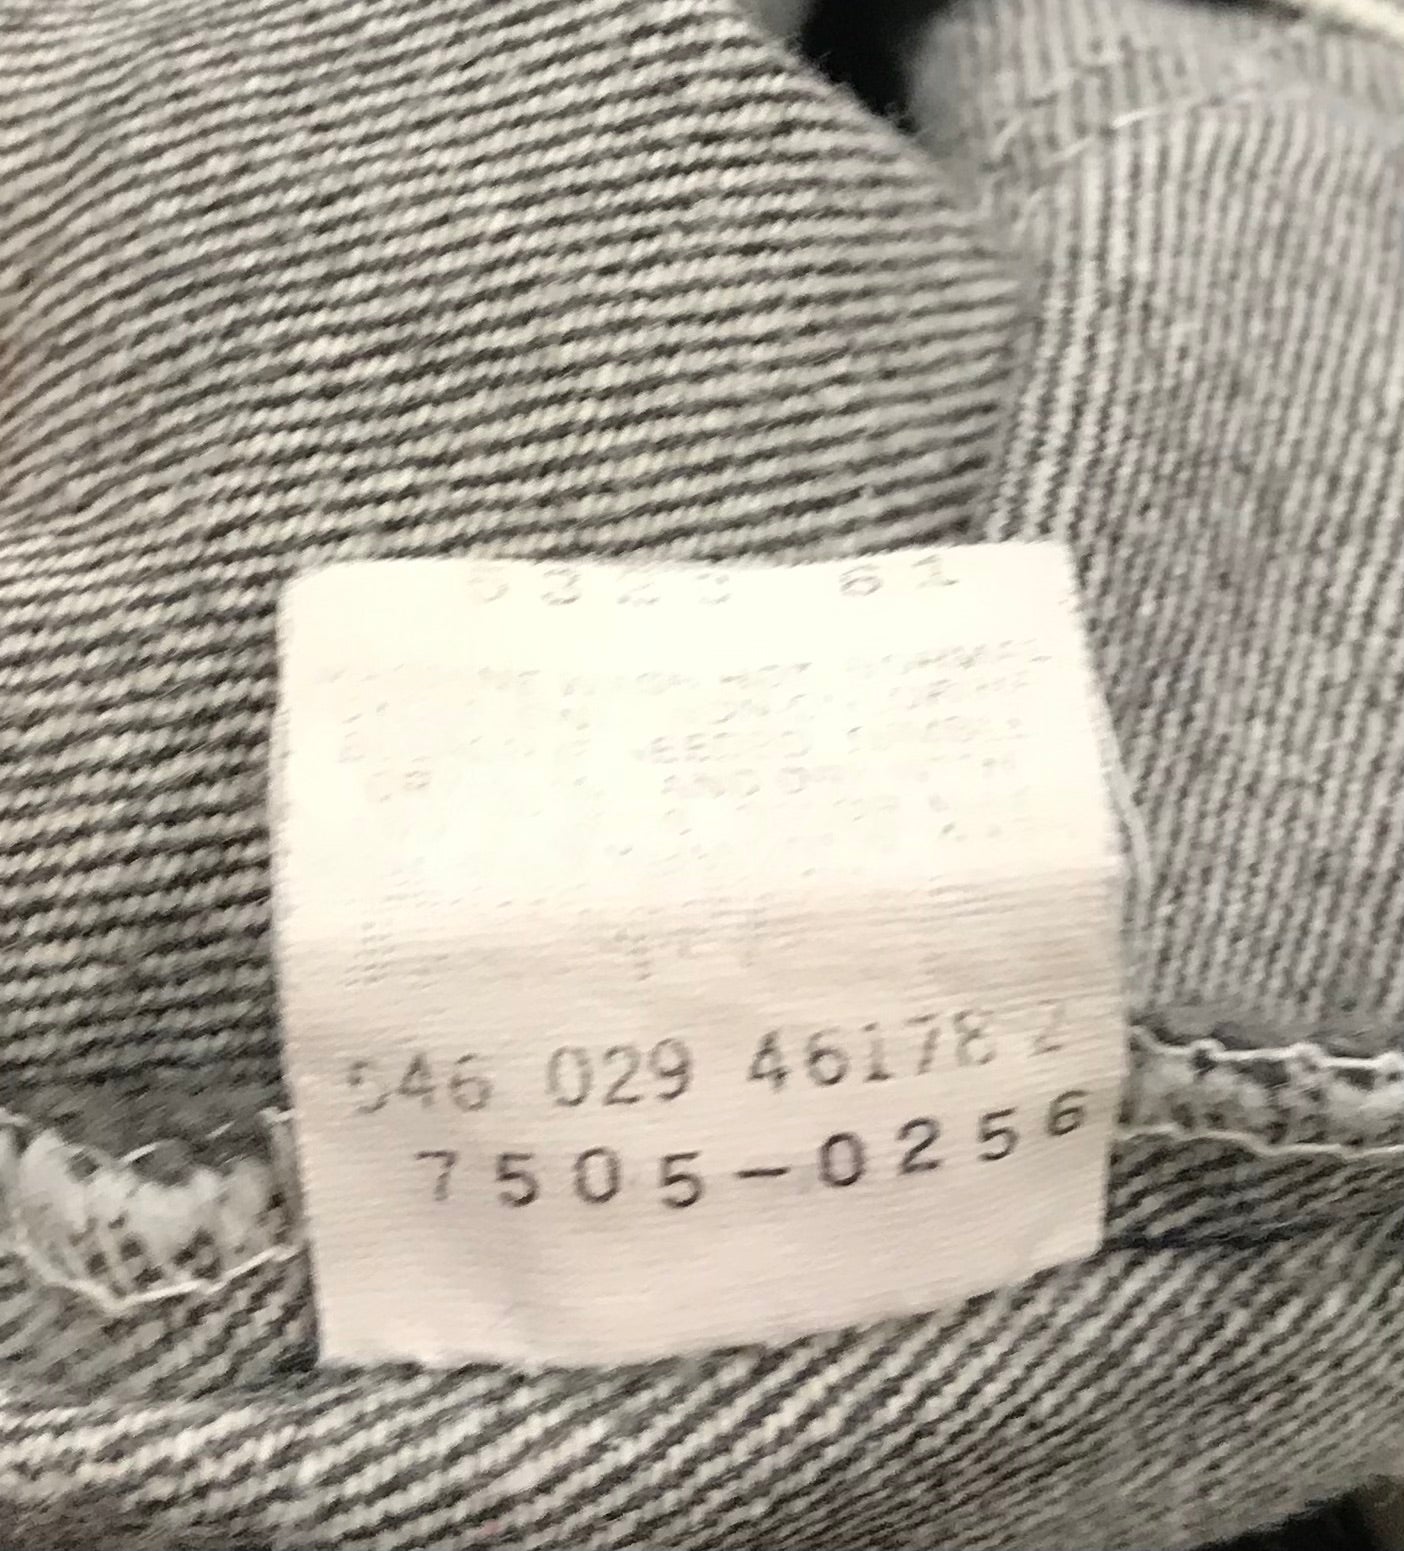 Vintage Denim Pants MADE IN USA〜Levi′s 505〜 [J25353]